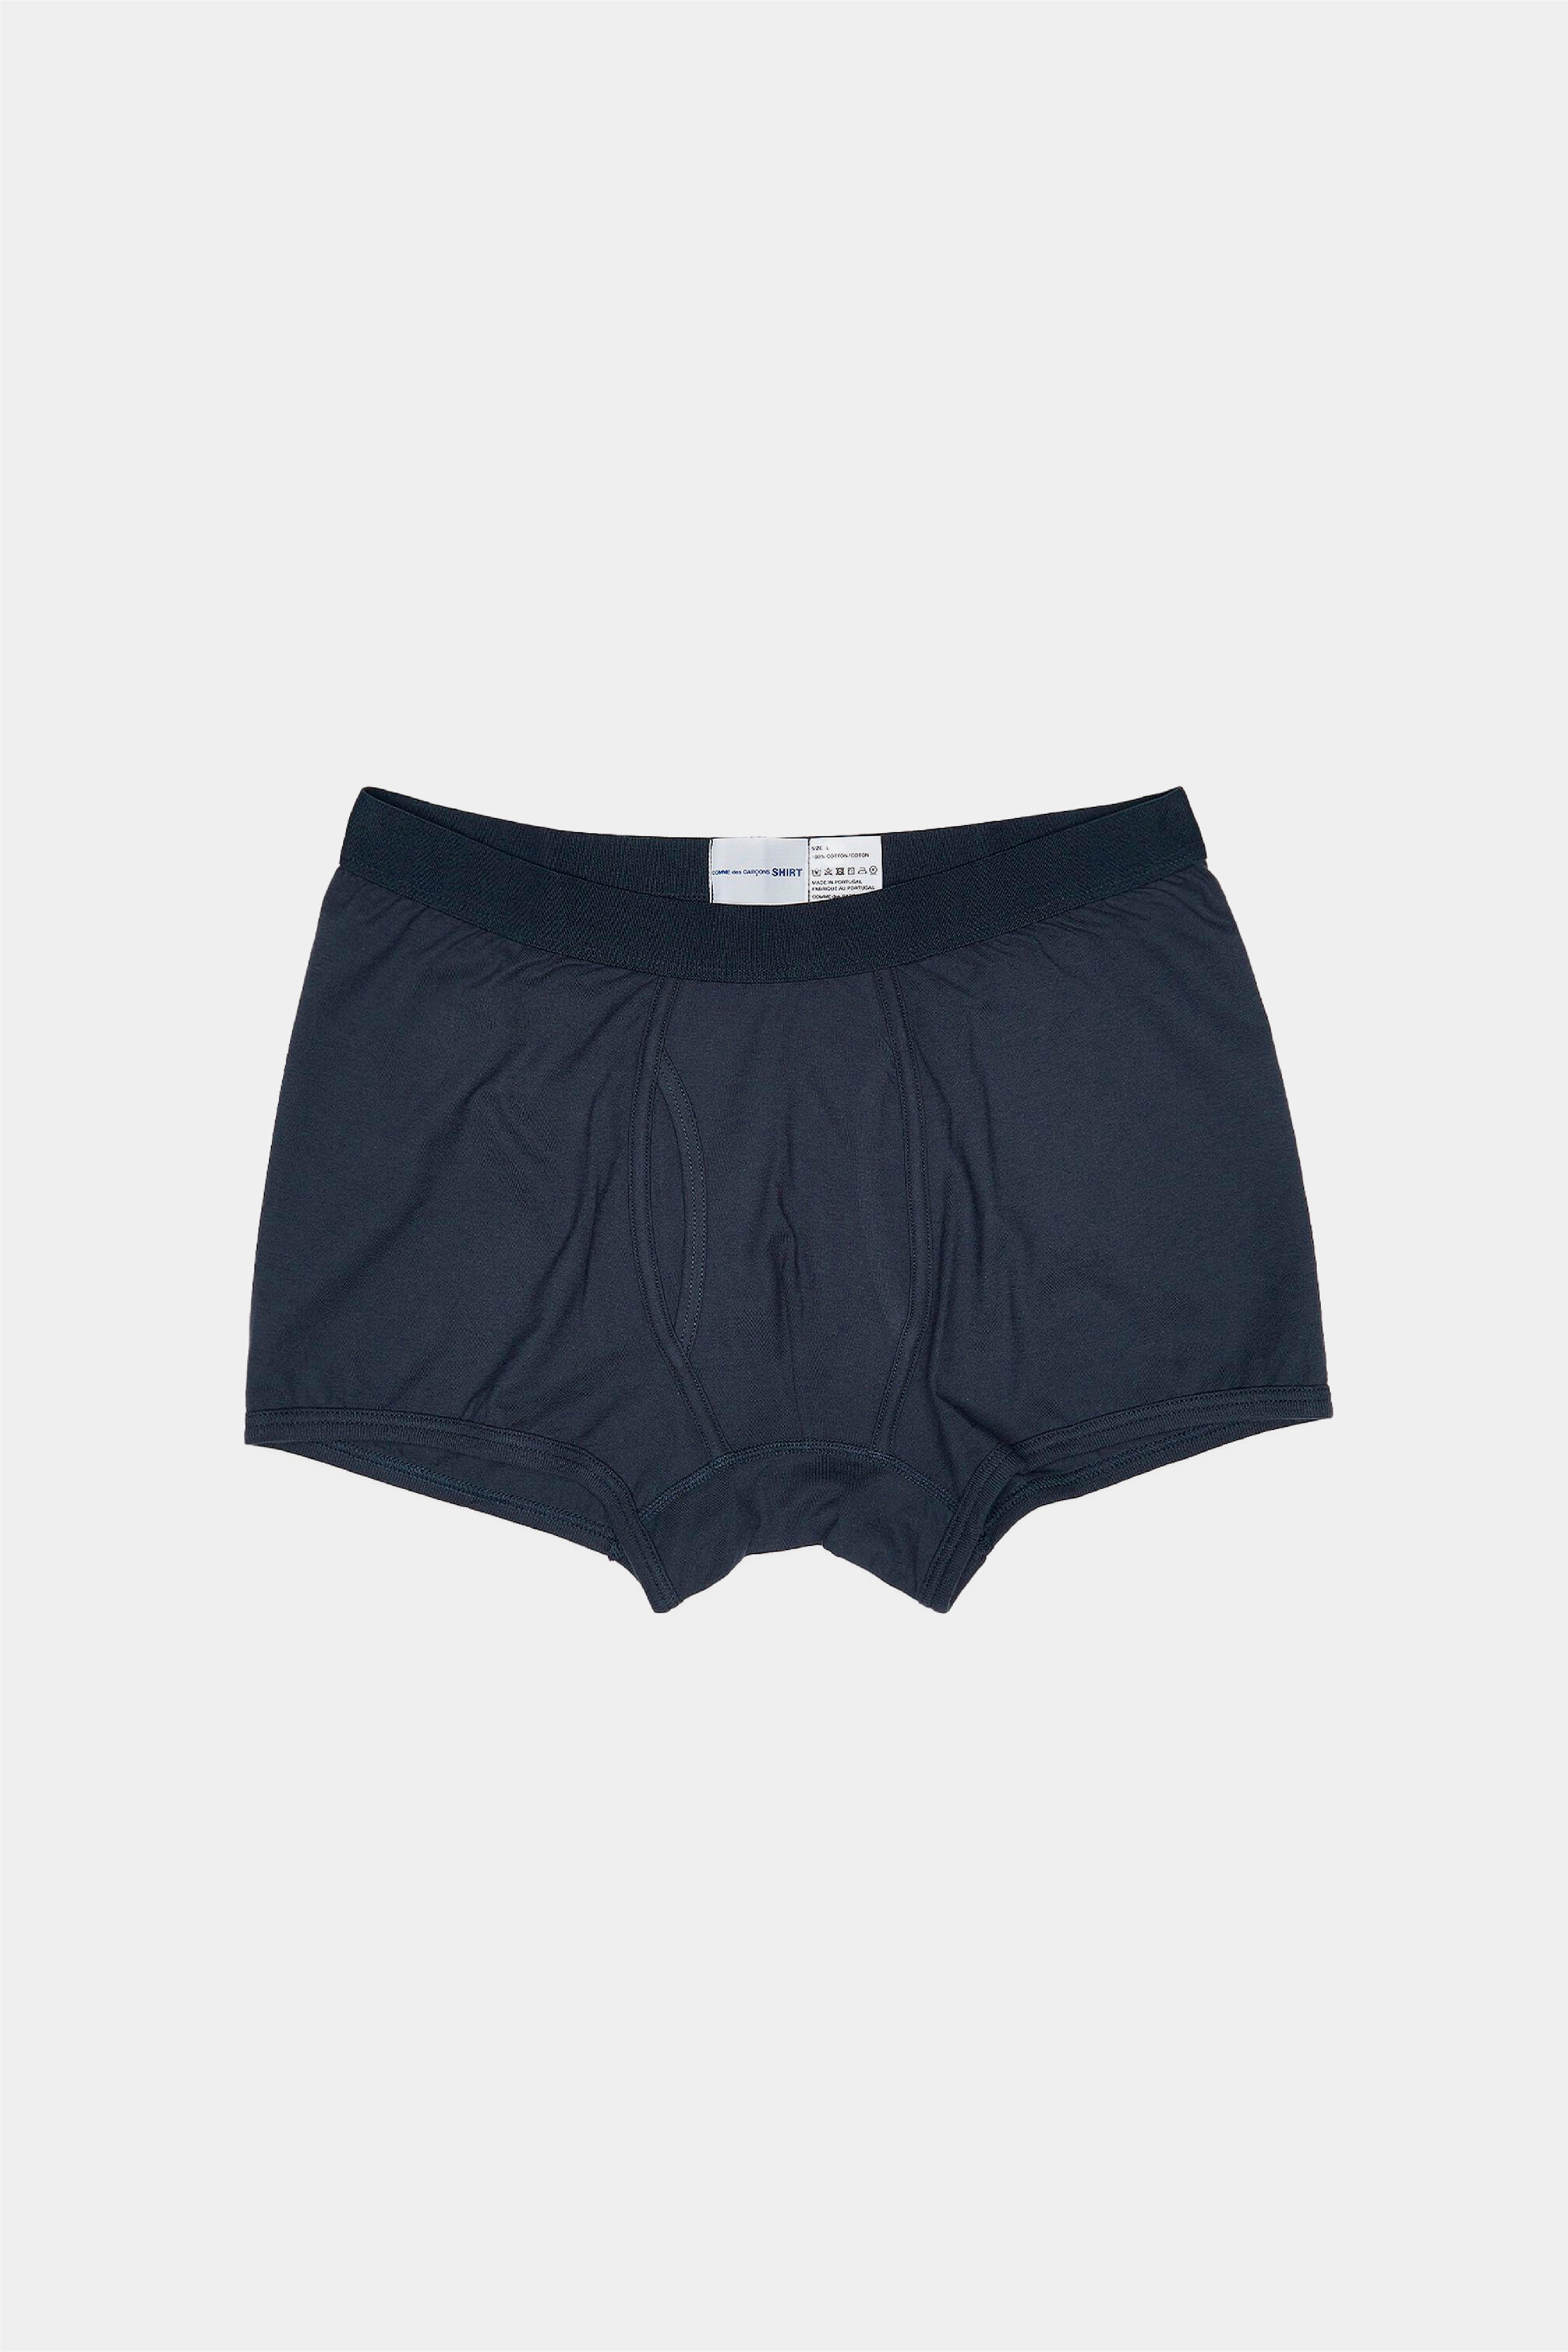 Selectshop FRAME - COMME DES GARÇONS SHIRT Boxers Underwear Concept Store Dubai